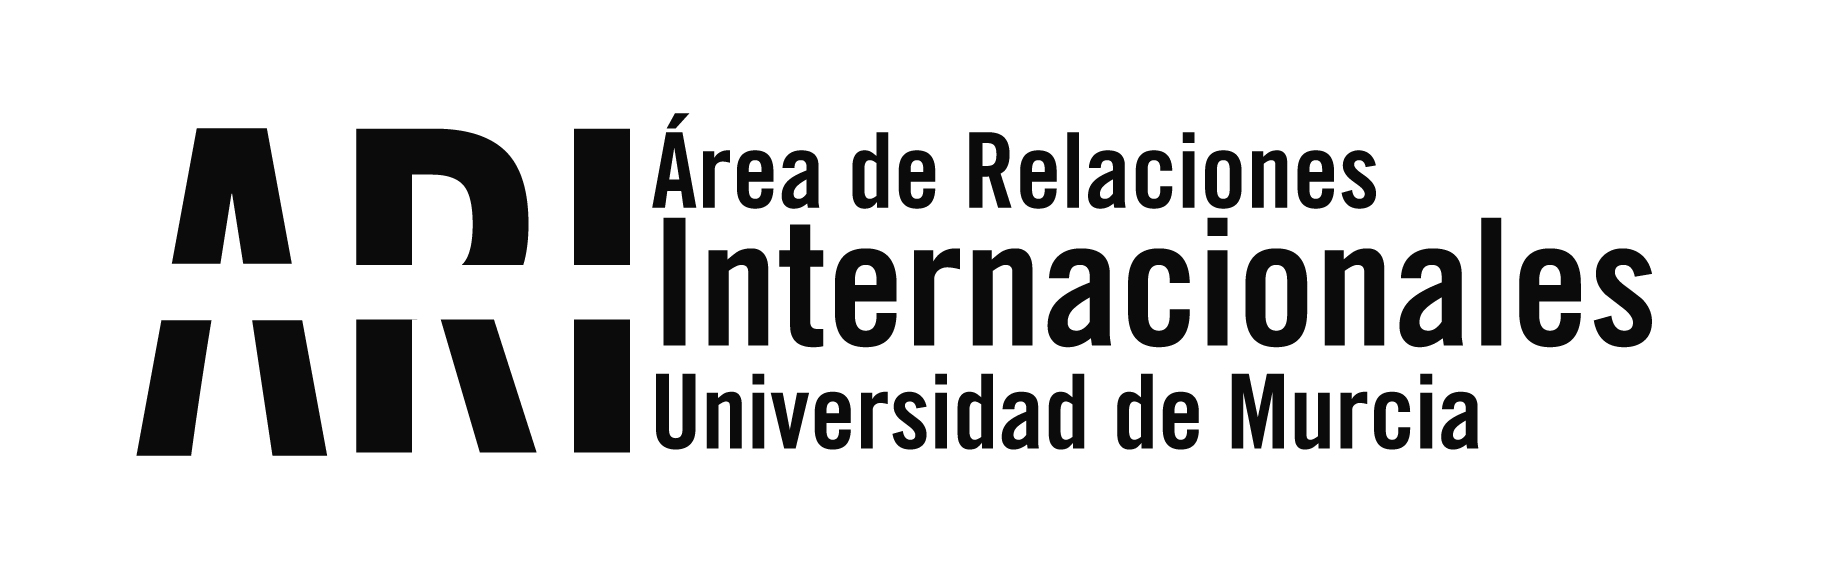 Murcia da la bienvenida a 700 nuevos estudiantes internacionales de la UMU en los #WelcomeDays - Área de Relaciones Internacionales